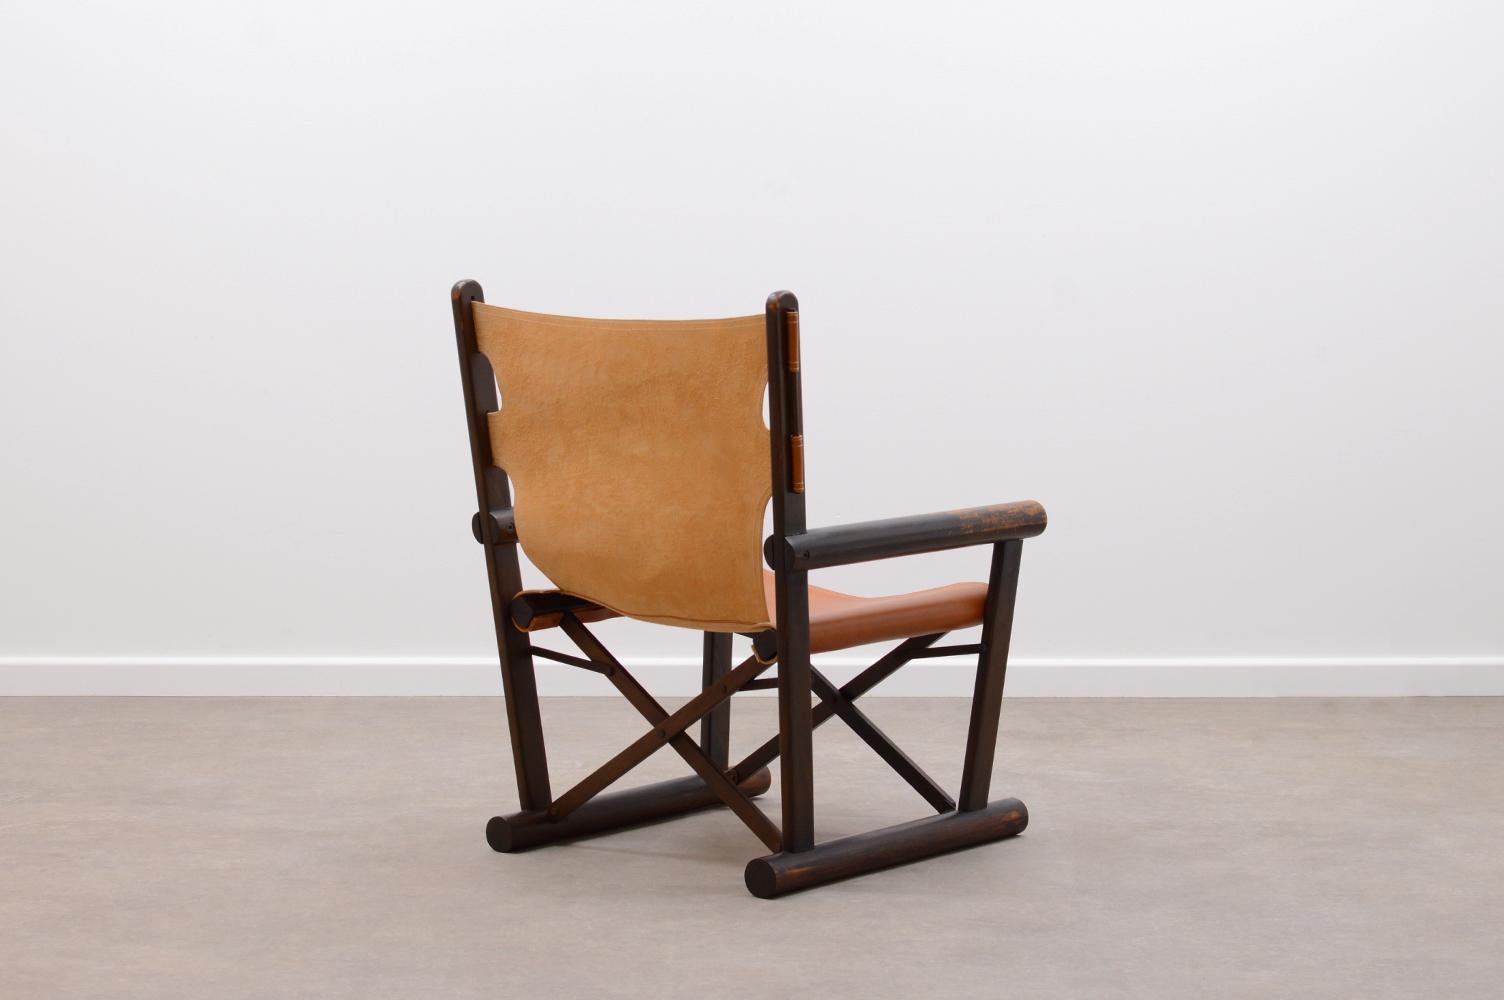 Brazilian PL22 chair by Carlo Hauner & Martin Eisler for OCA, Brazil 60s.